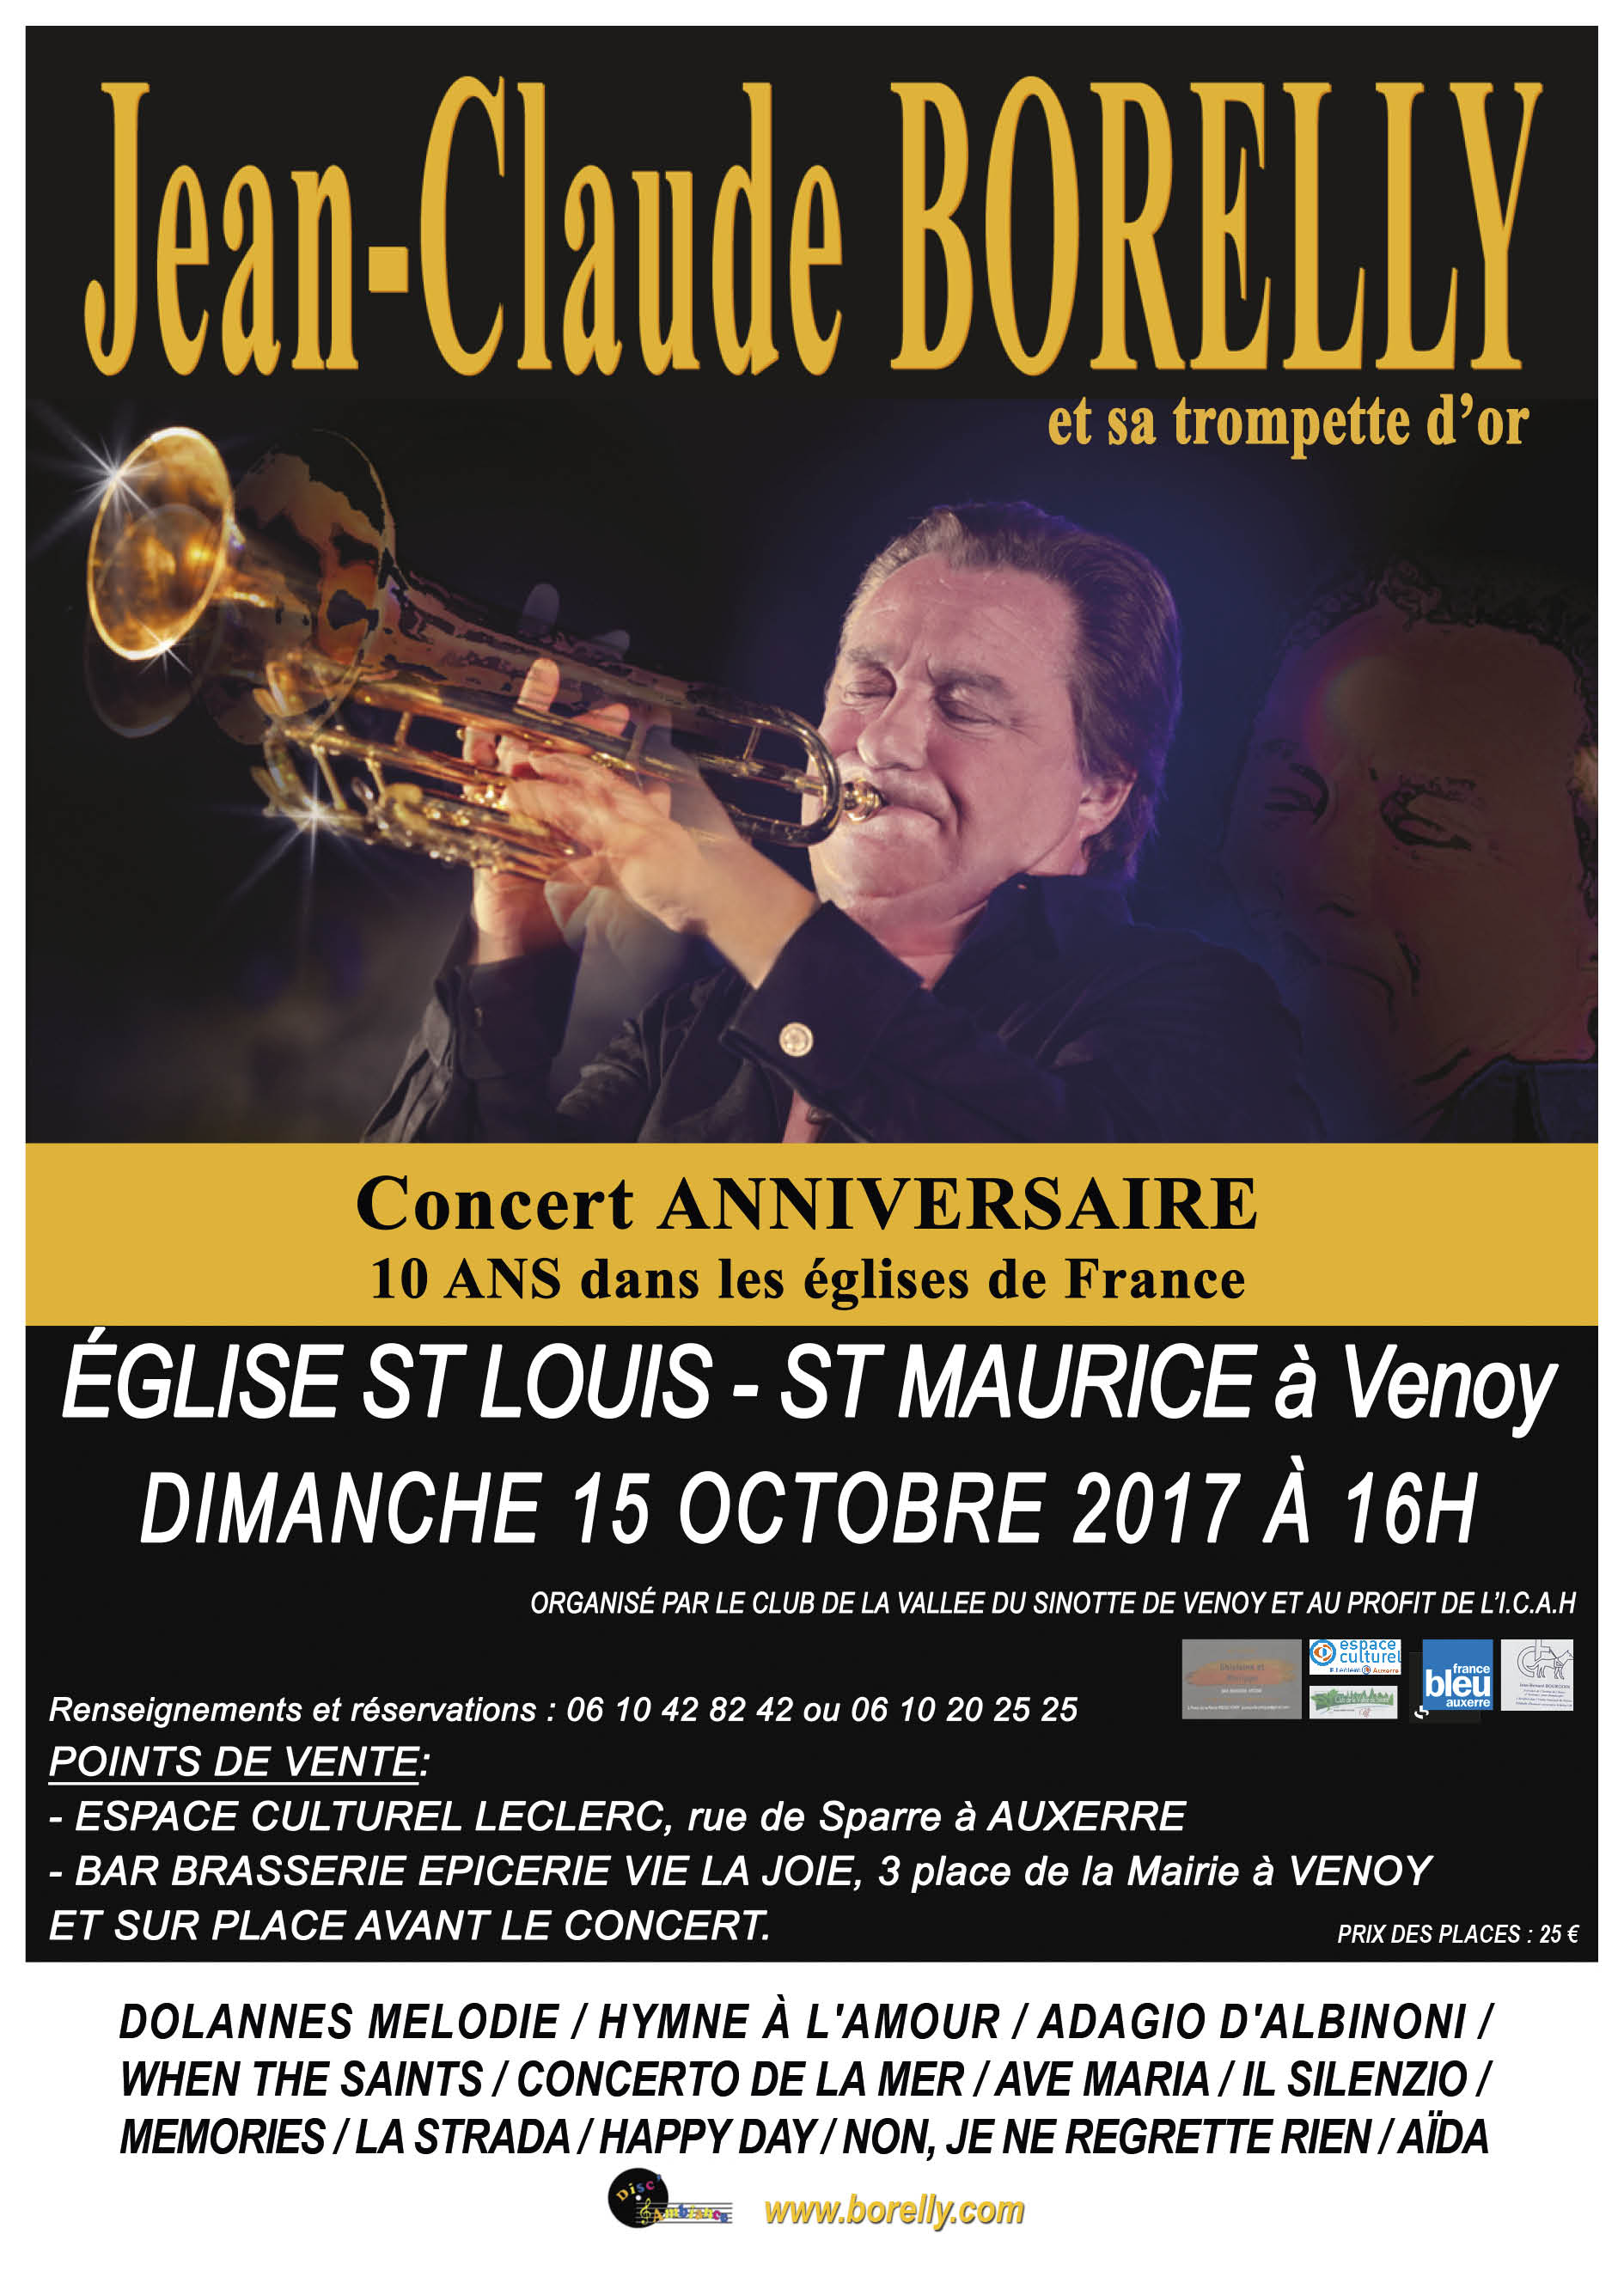 Concert du 15 octobre à Venoy